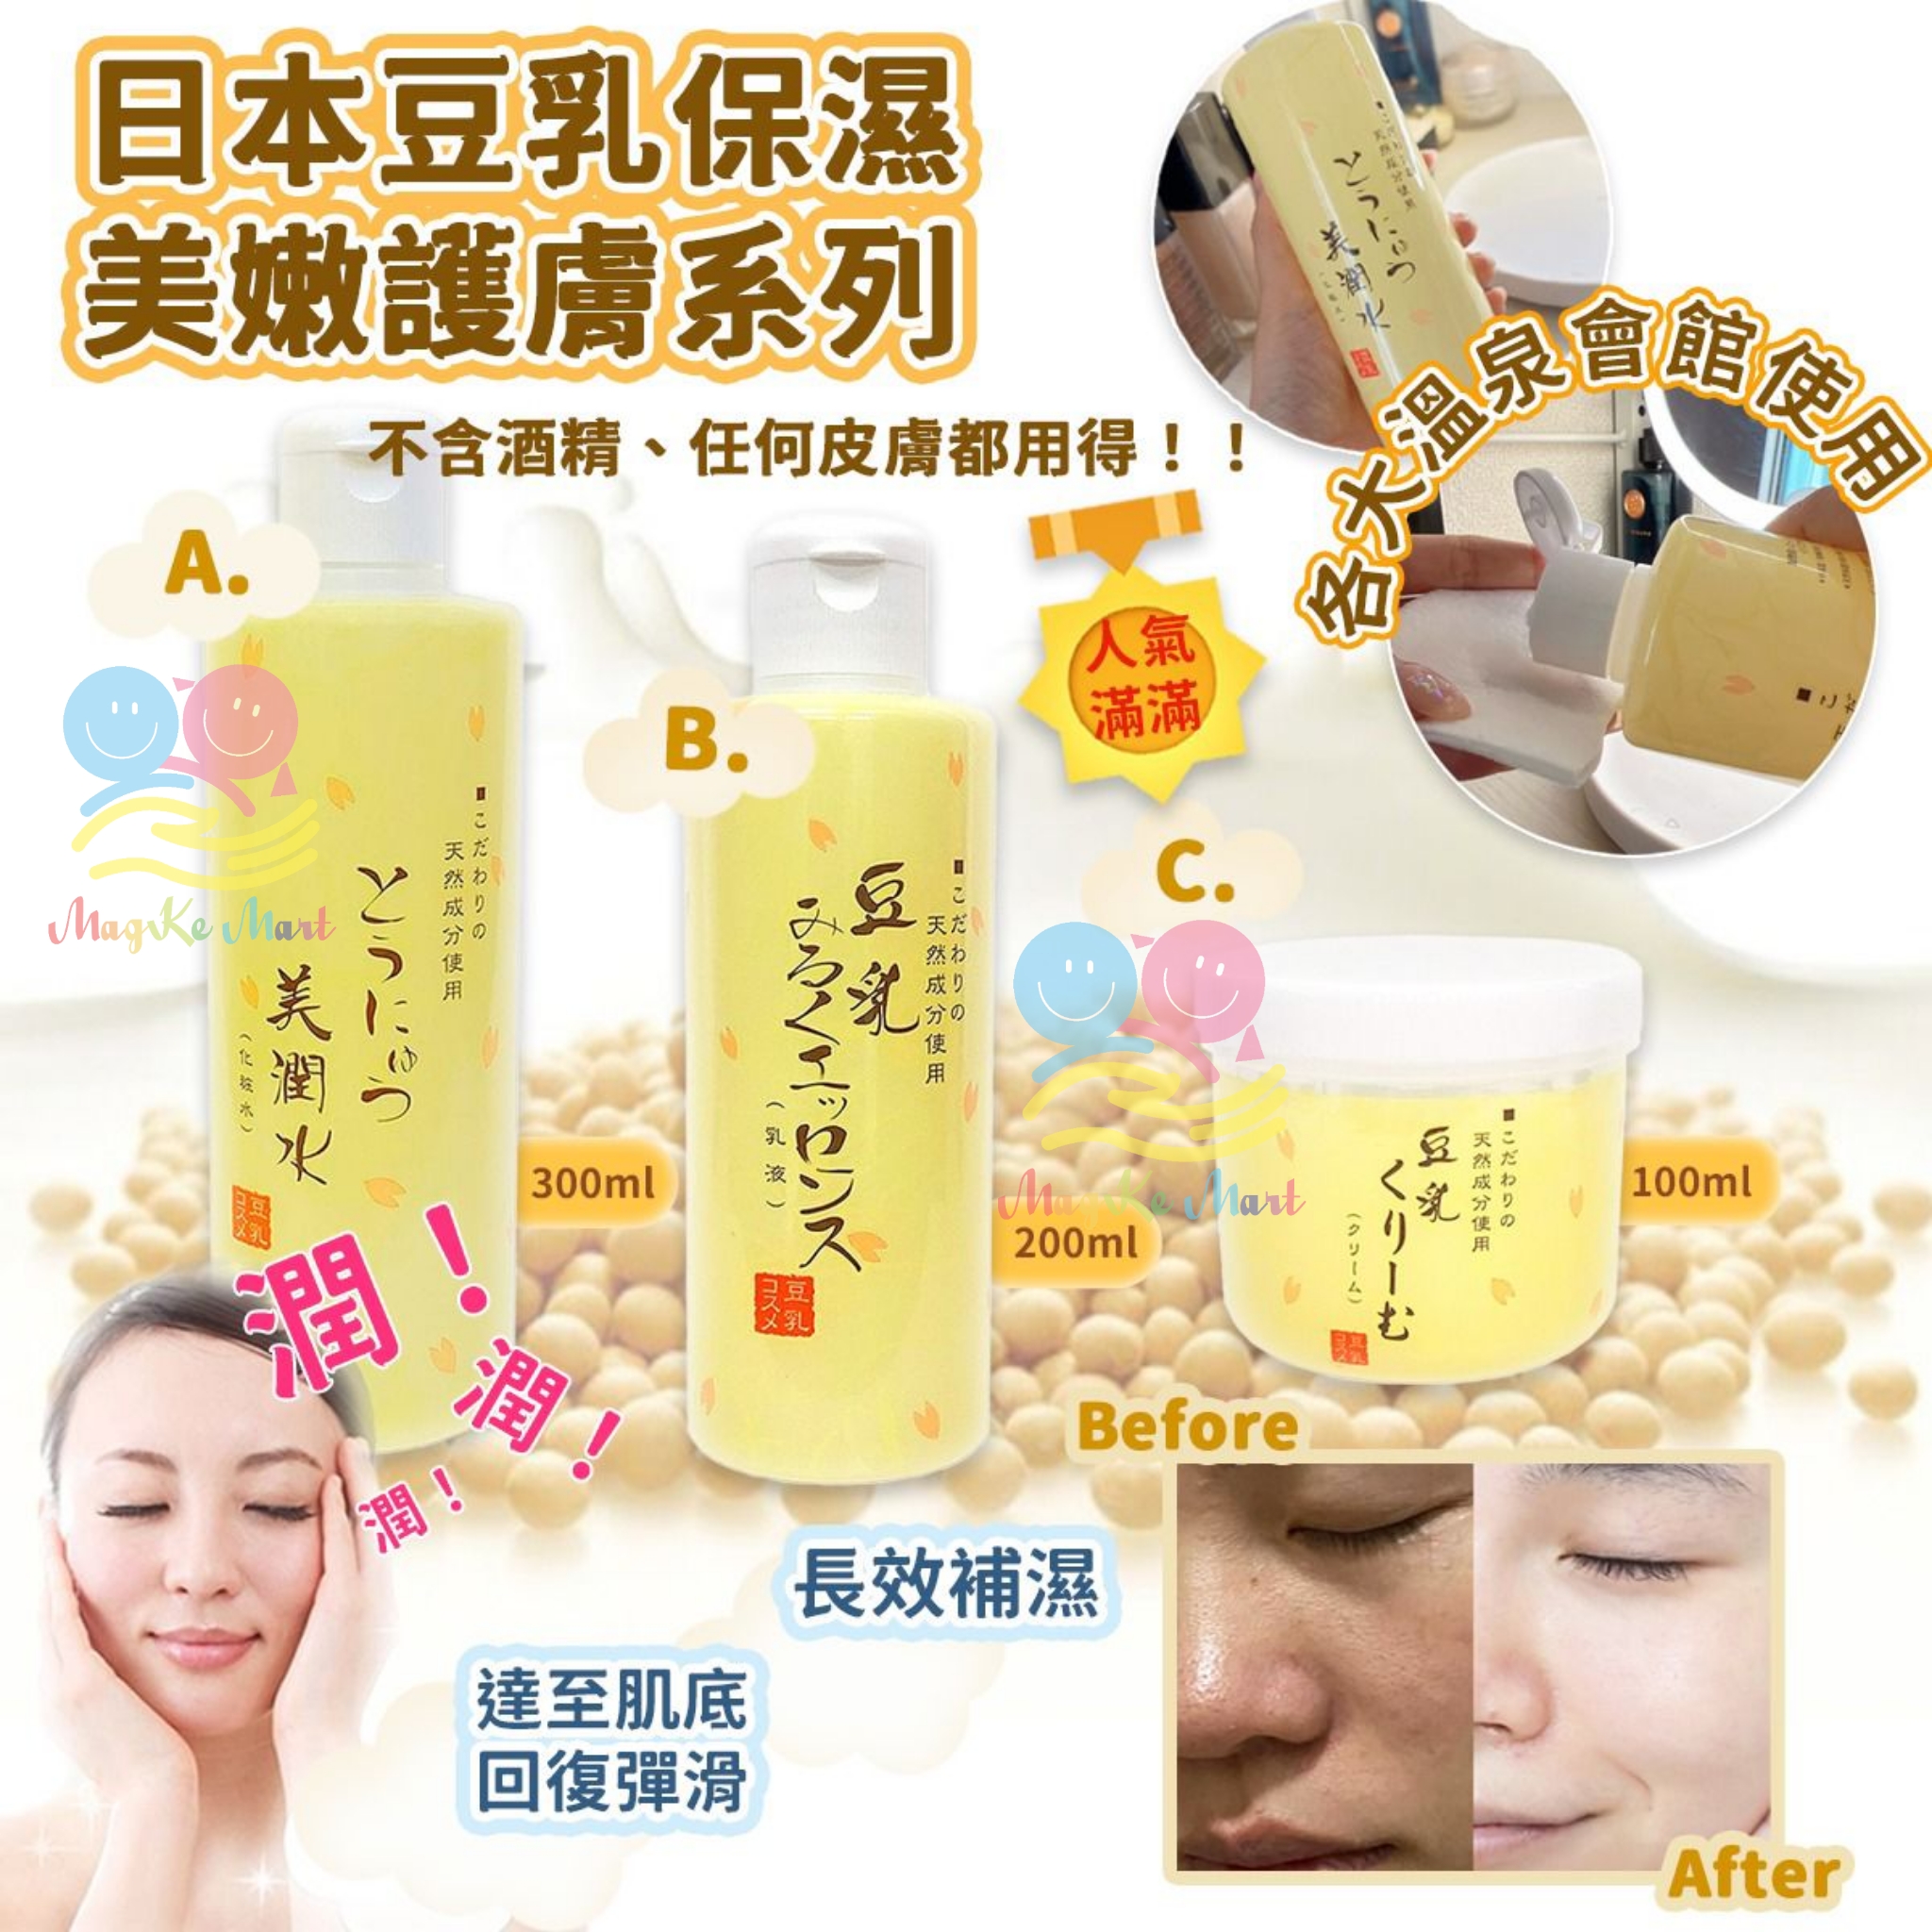 日本豆乳保濕美嫩護膚系列